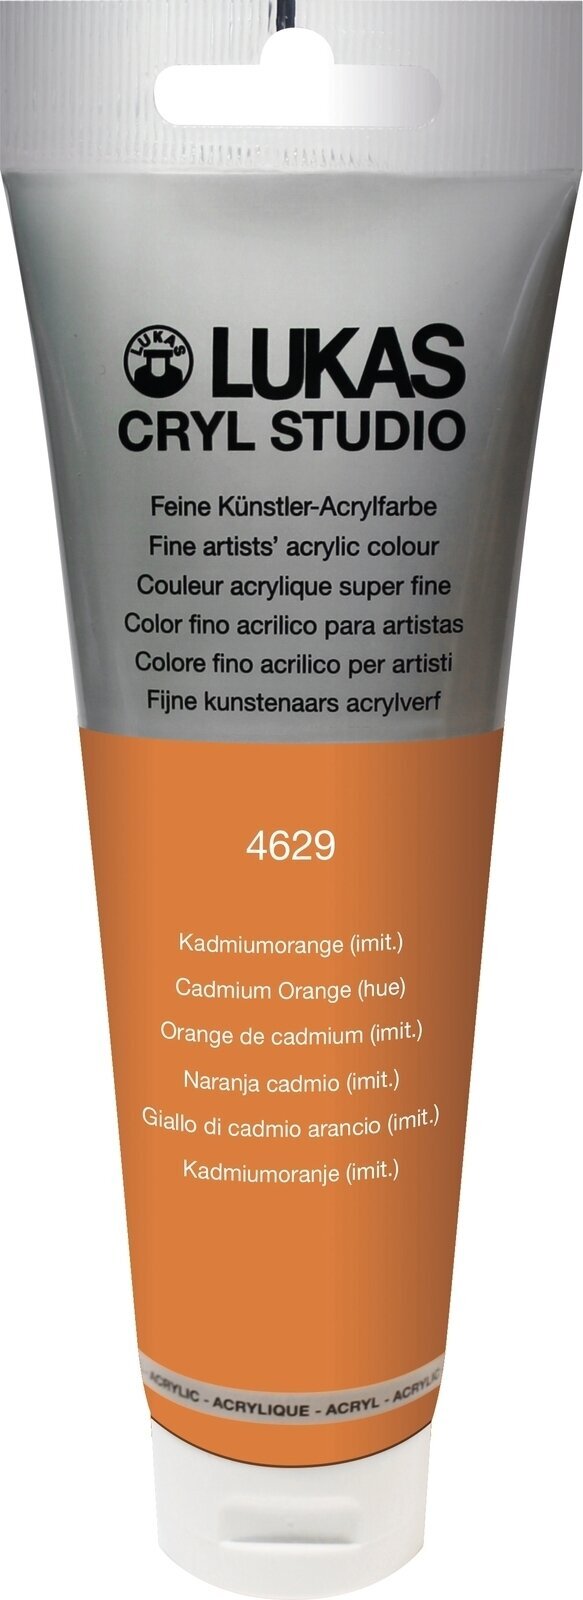 Acrylfarbe Lukas Cryl Studio Acrylfarbe 125 ml Cadmium Orange Hue